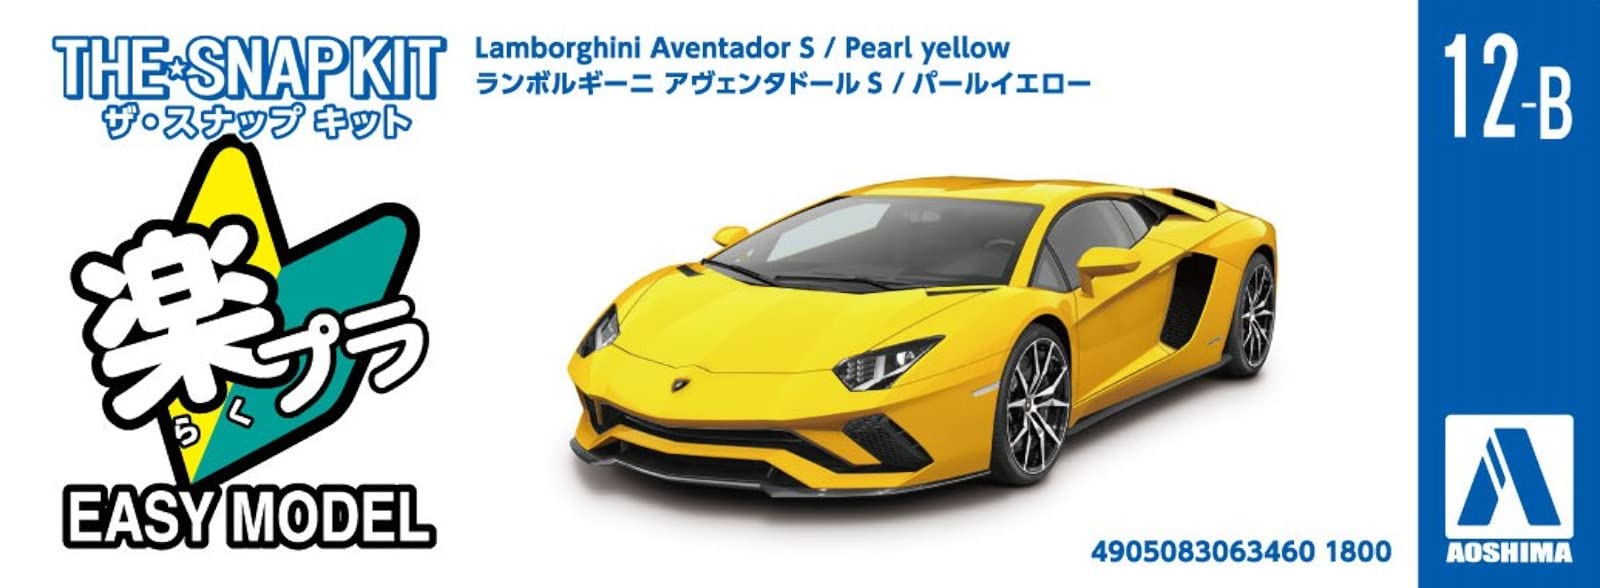 AOSHIMA The Snap Kit No.12-B 1/32 Lamborghini Aventador S Pearl Yellow Plastic Model